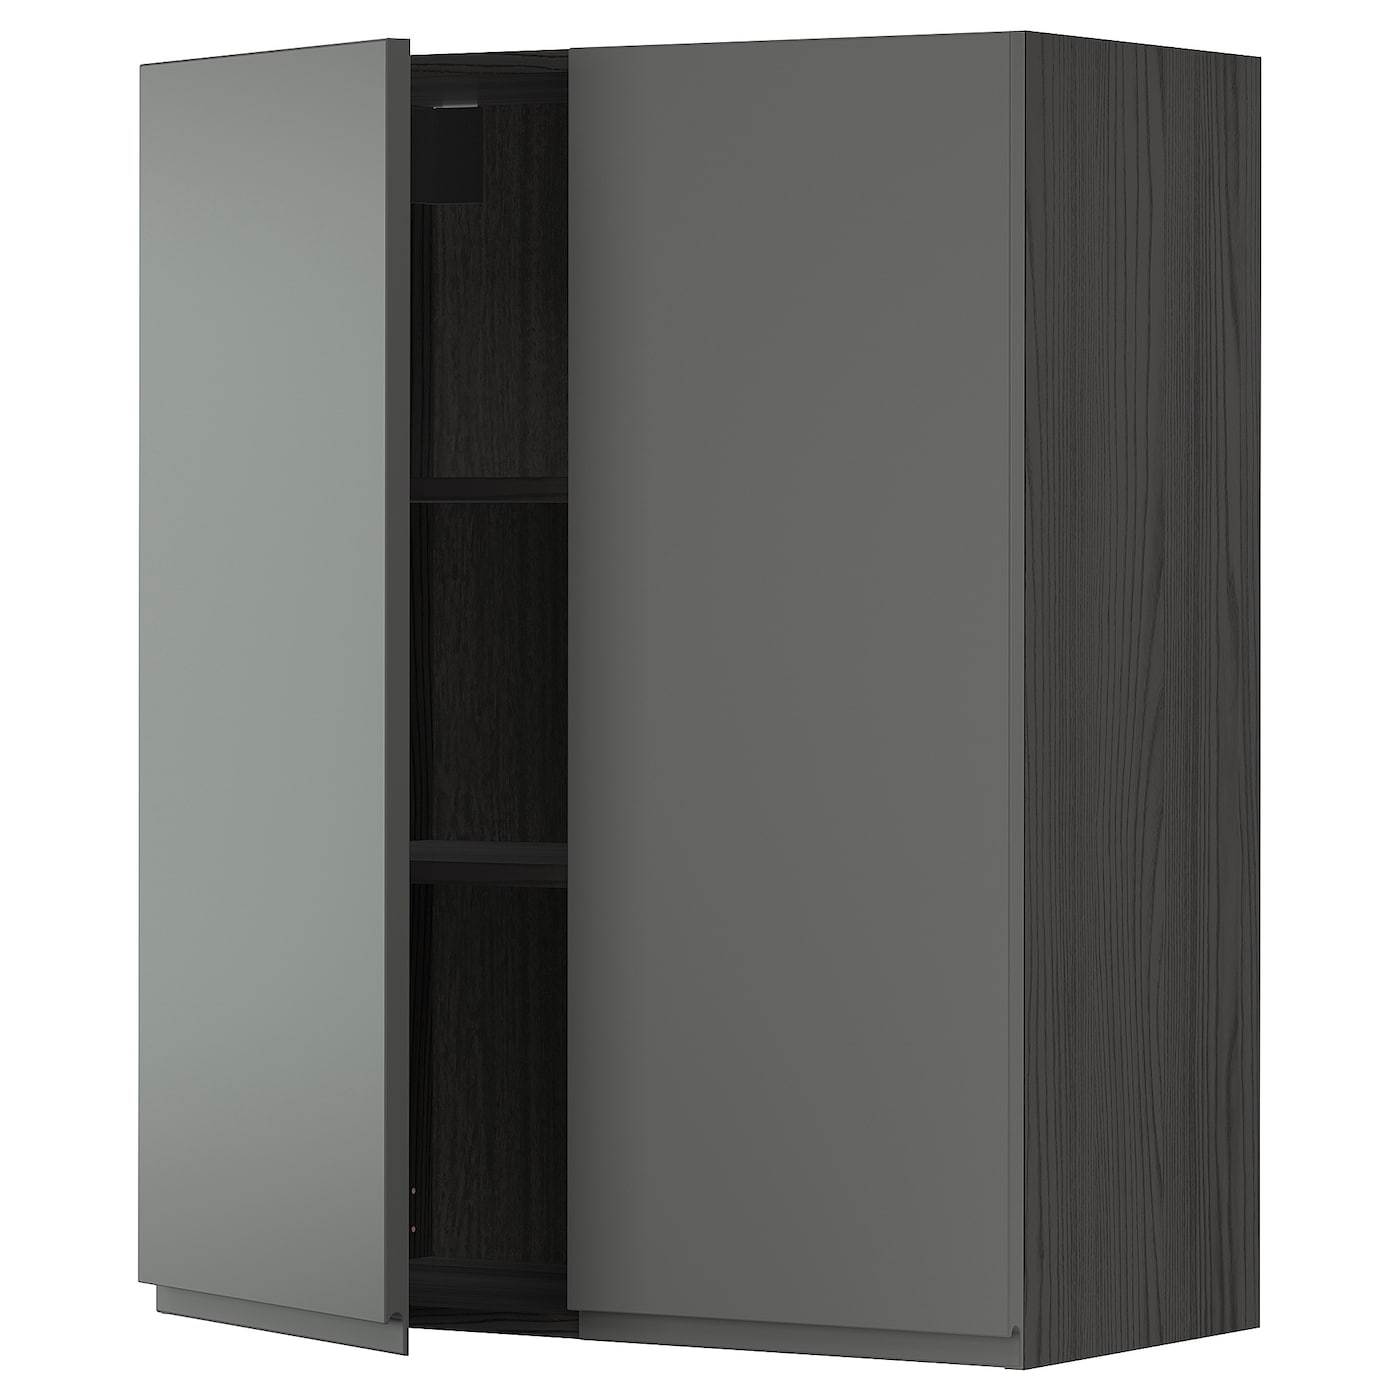 Навесной шкаф с полкой - METOD IKEA/ МЕТОД ИКЕА, 100х80 см,  темно-серый